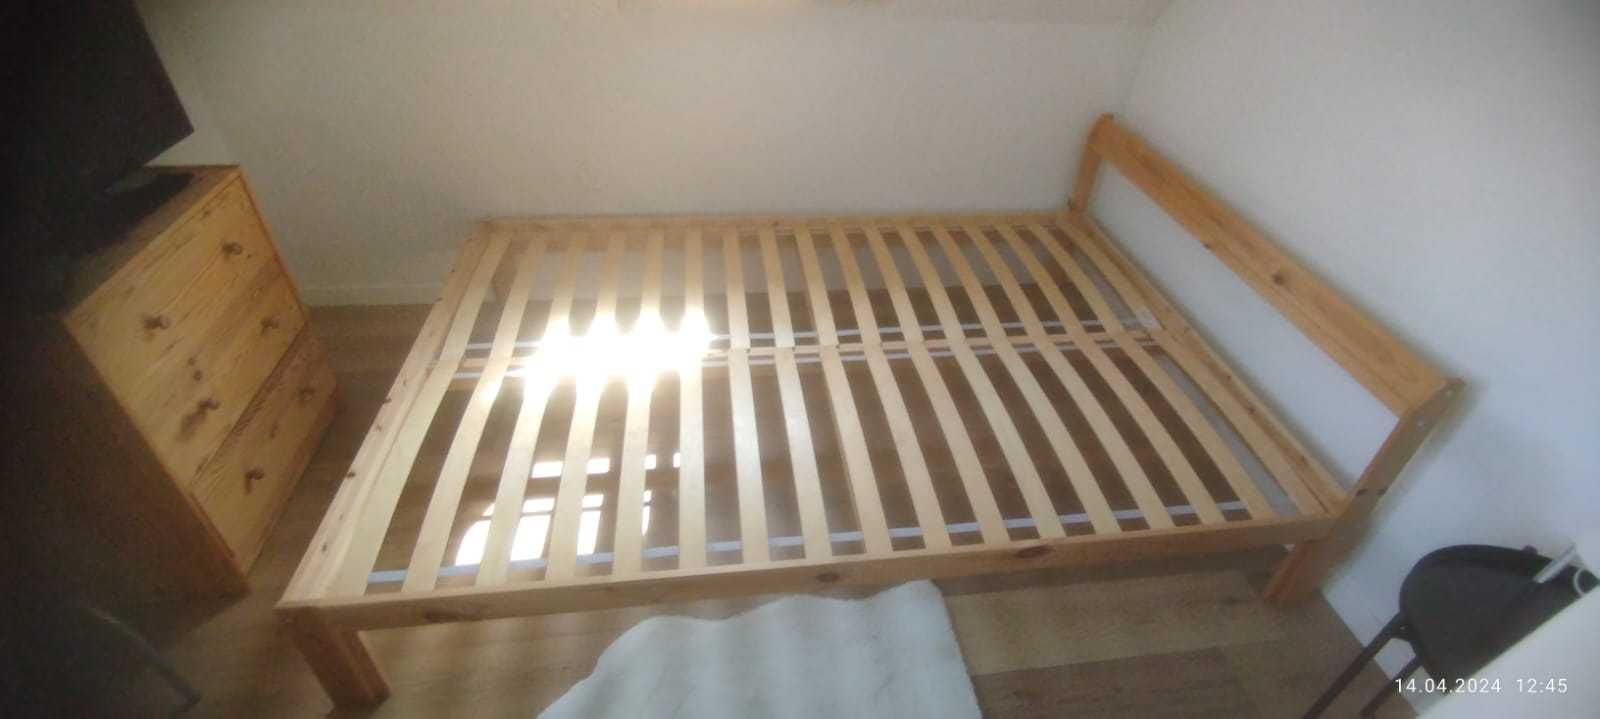 Łóżko drewniane IKEA 140*200